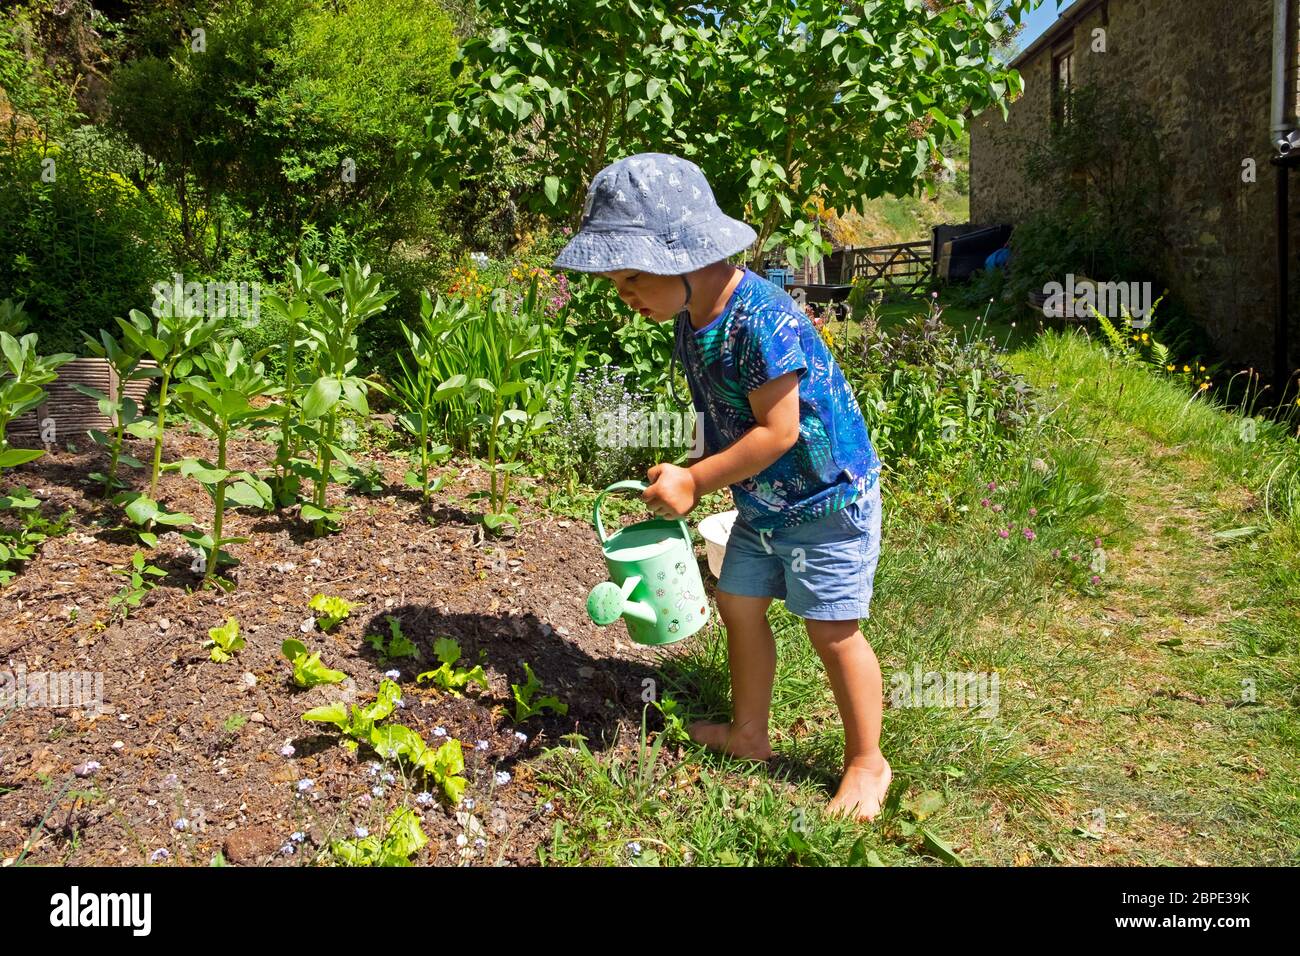 Enfant petit garçon 3 avec arrosage peut porter un chapeau de soleil verser de l'eau sur les plantes lettuces dans le jardin sec de mai au printemps pays de Galles Royaume-Uni Grande-Bretagne KATHY DEWITT Banque D'Images